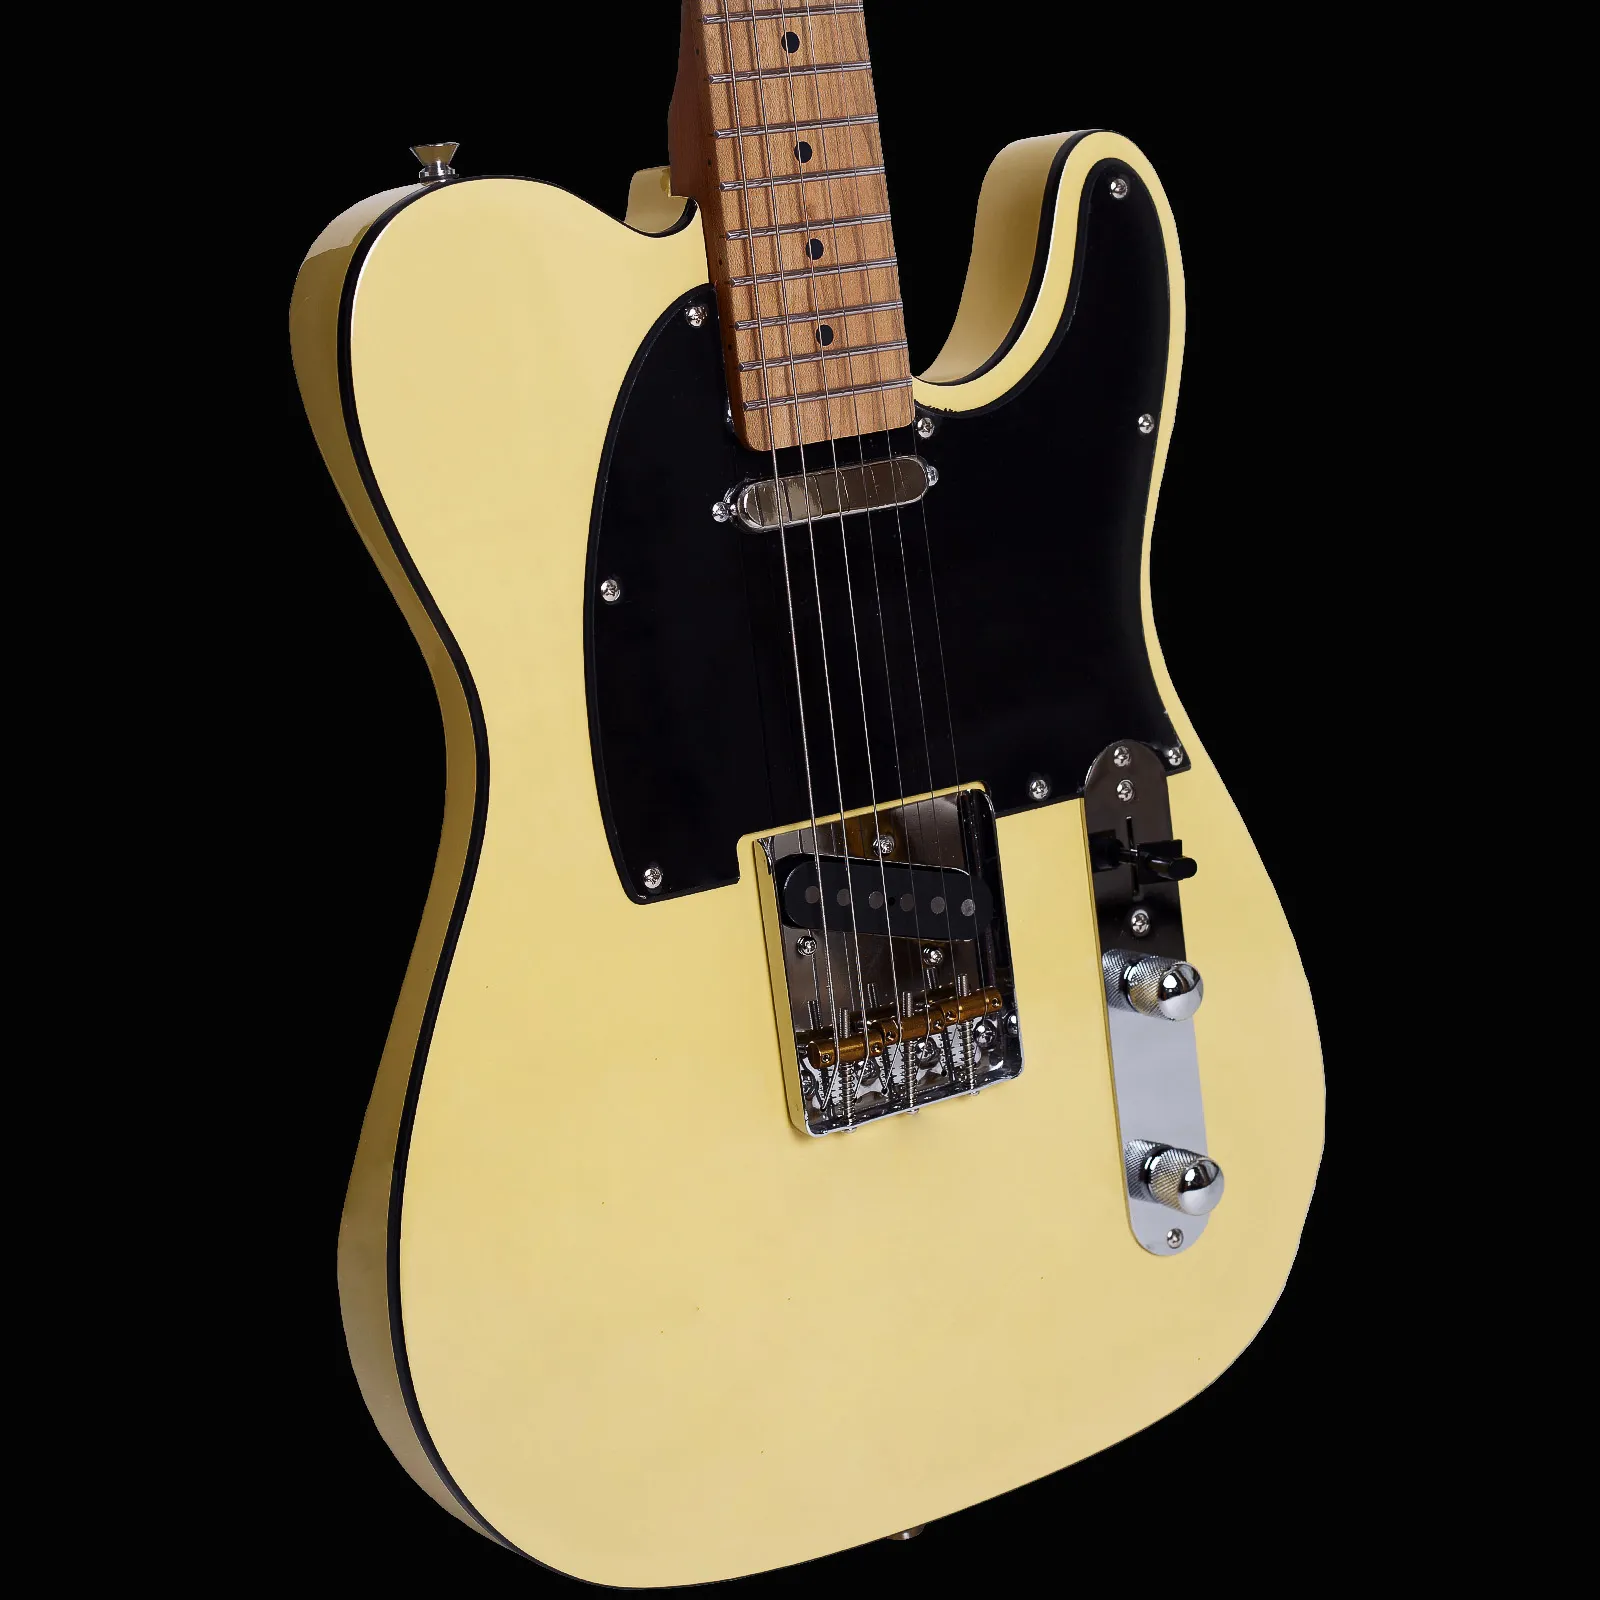 BoyaZiqi BZT-098 Guitarra eléctrica clásica de cuerpo sólido, 22 trastes de acero inoxidable (pulido a mano), cuerpo de aliso, mástil de arce tostado, interruptor y conector de lujo, amarillo claro vintage